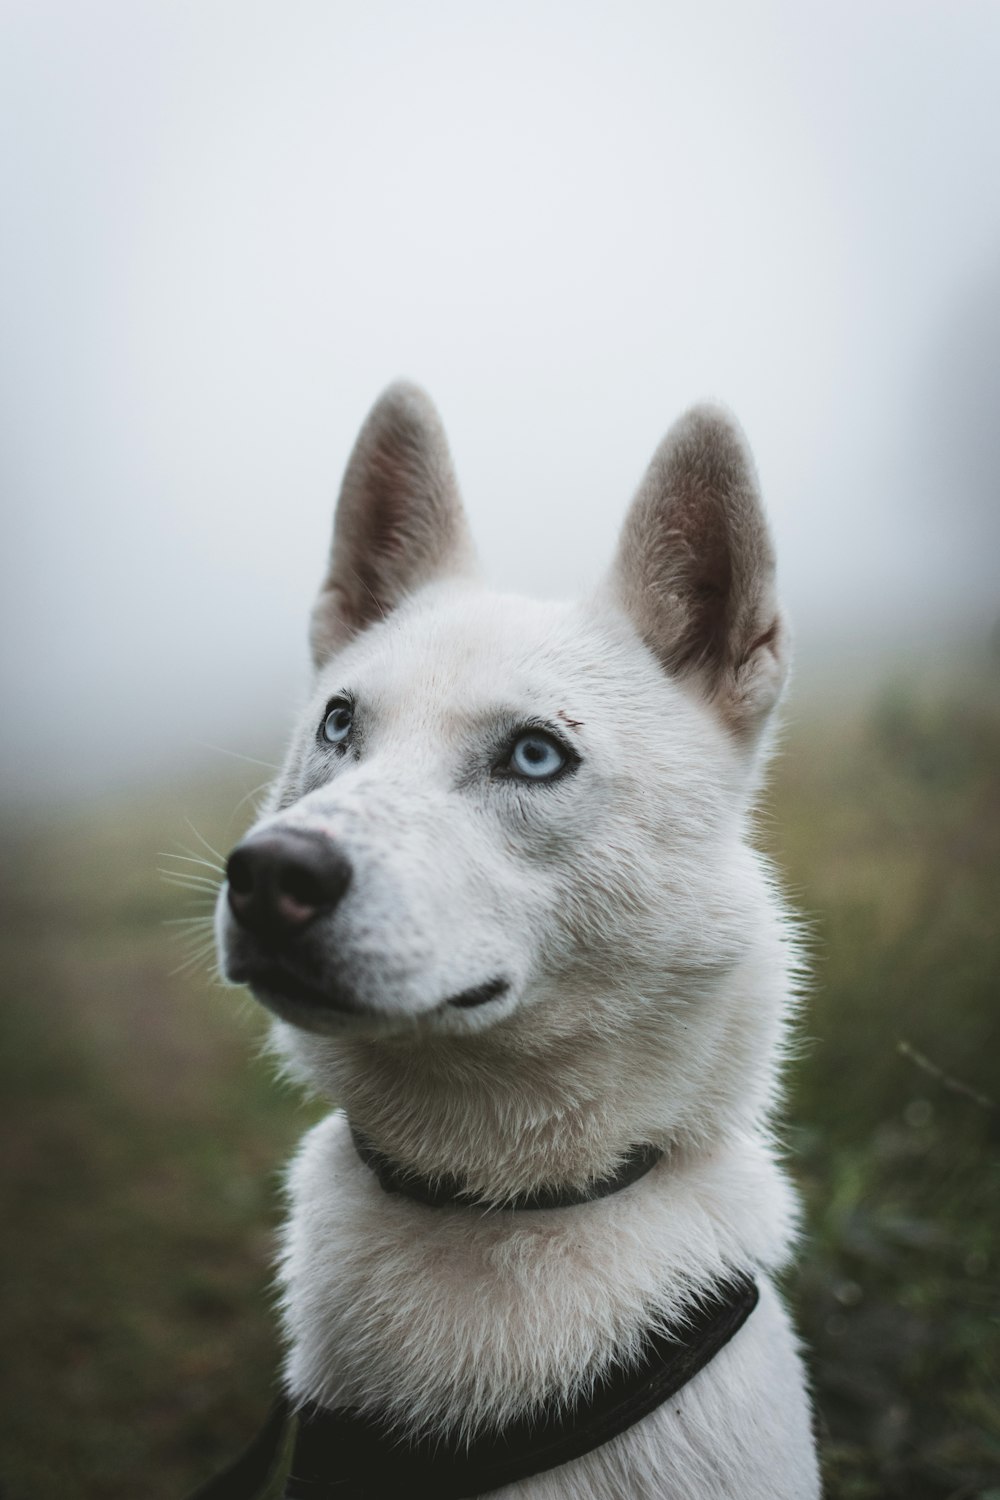 cane bianco nella fotografia a fuoco poco profondo